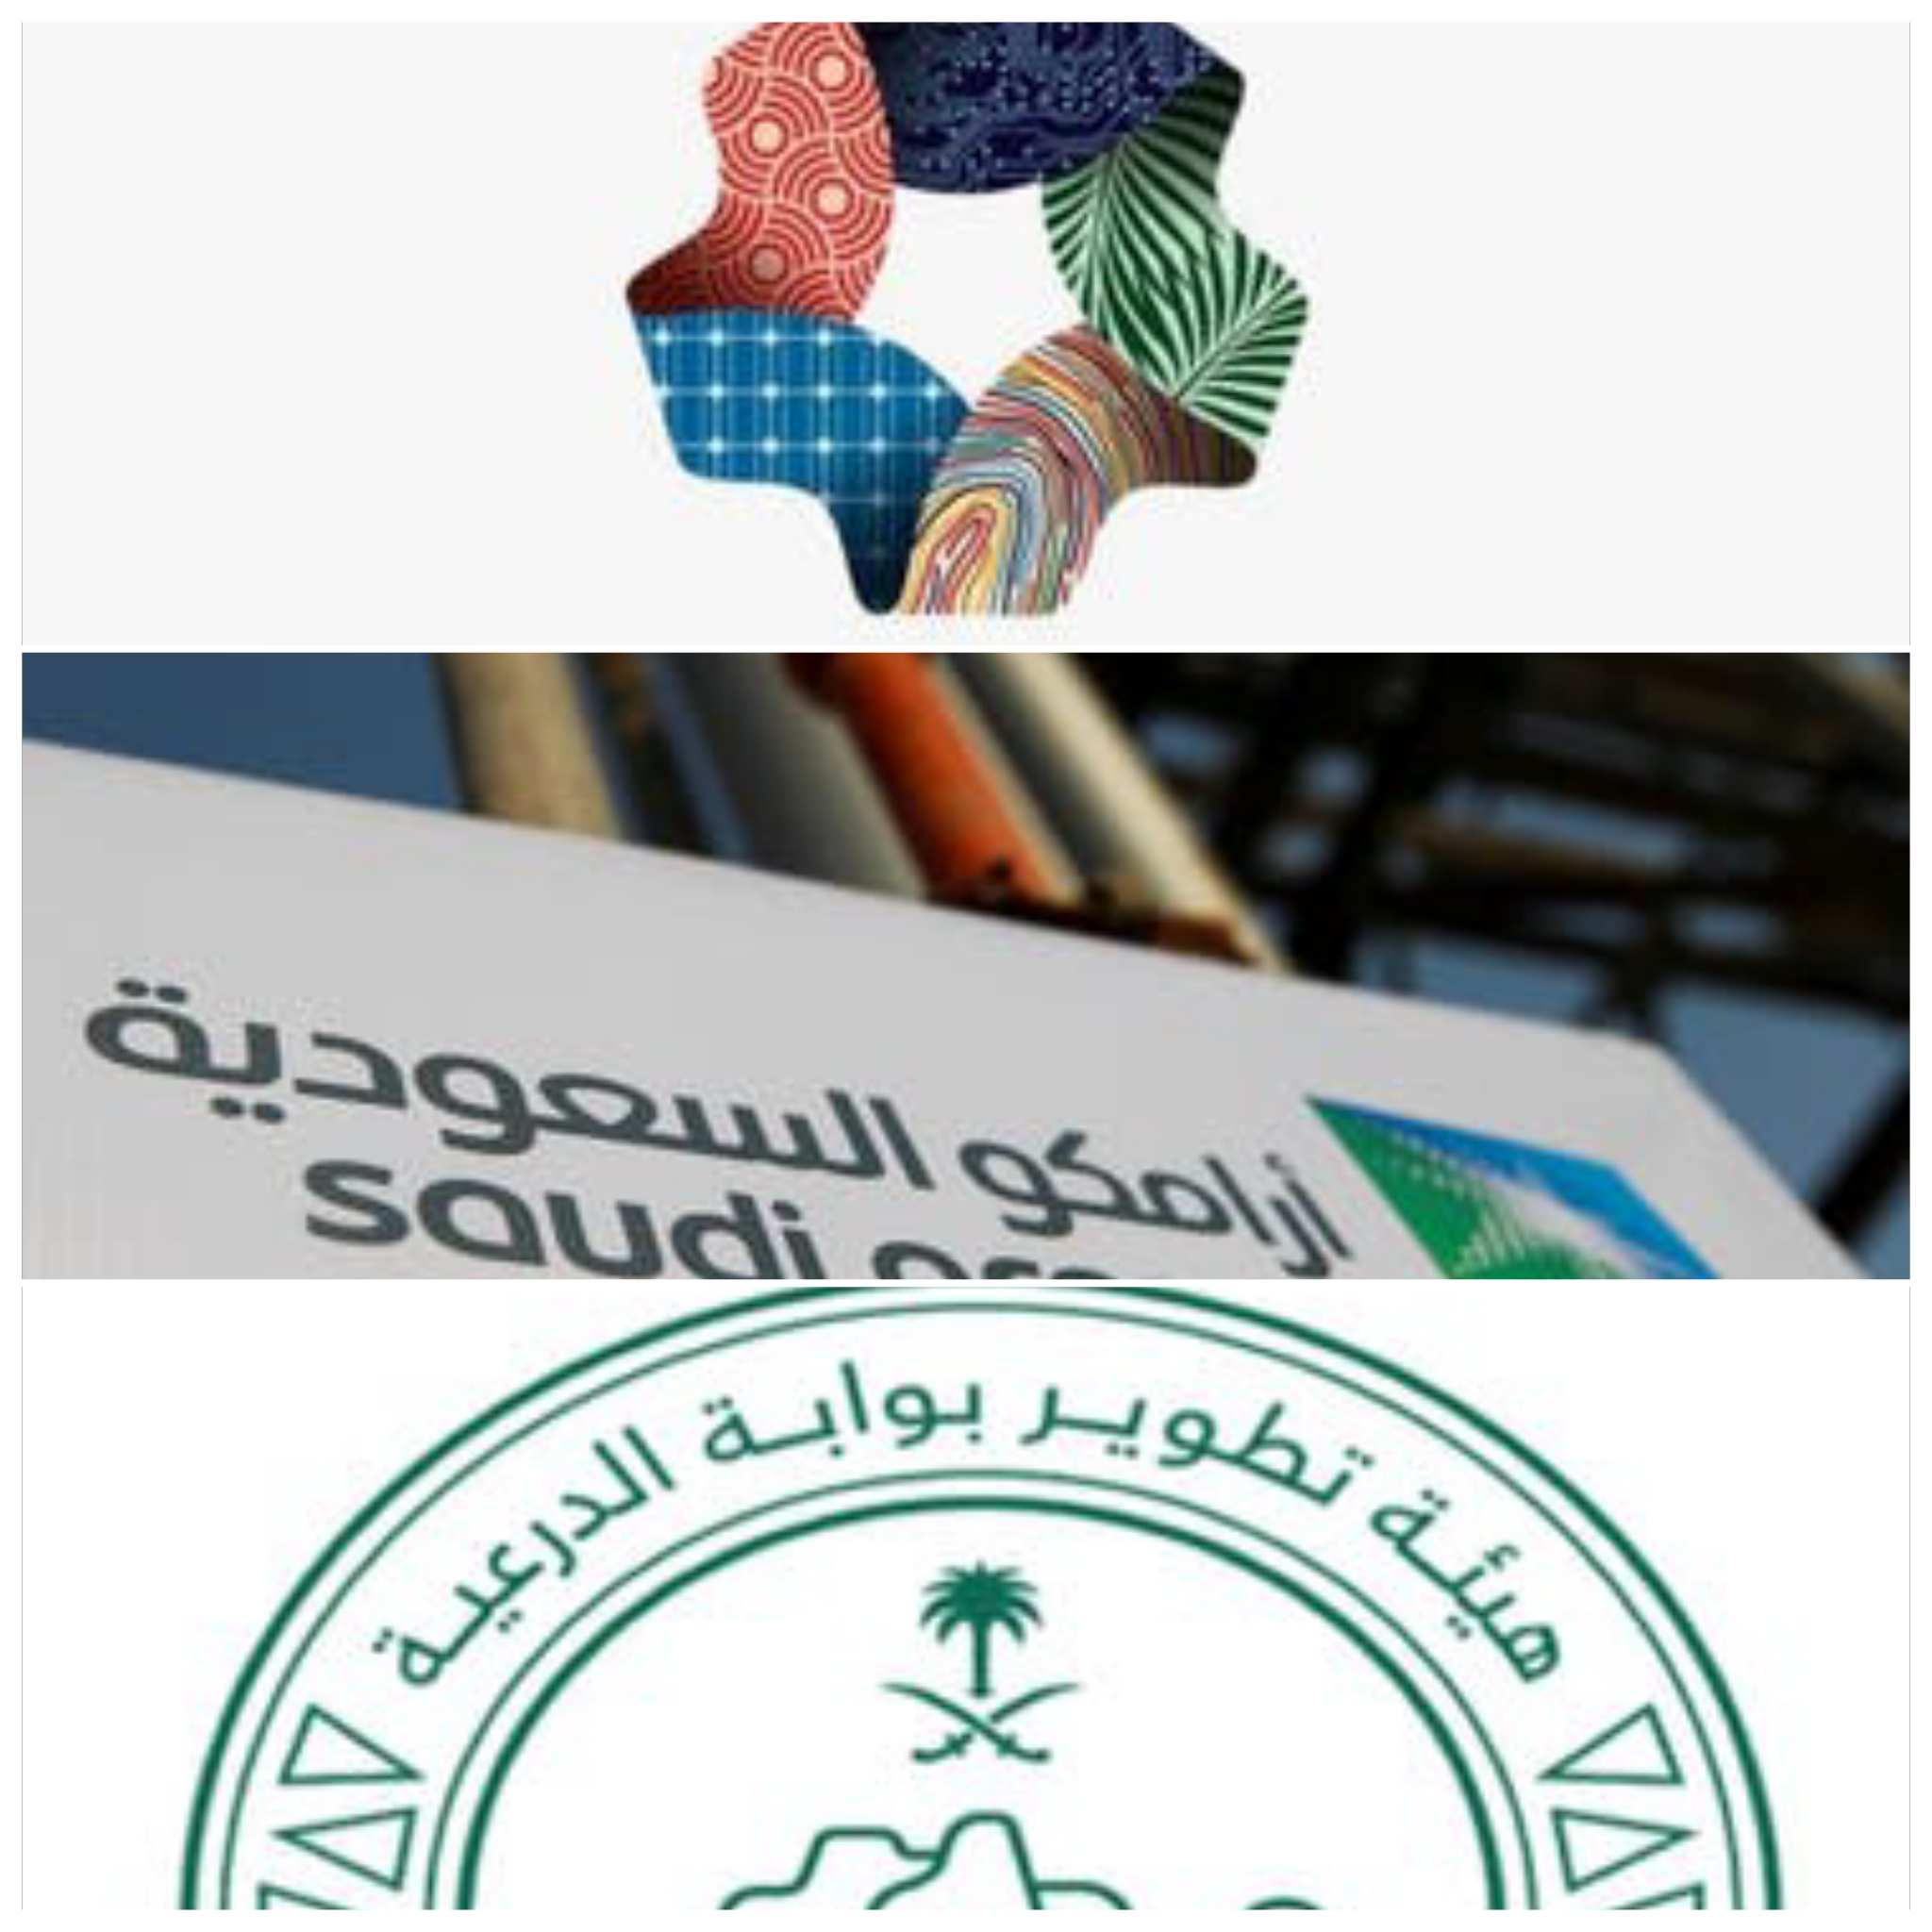 نقل ملكية اربعة الأندية سعودية أخرى الى بعض الشركات والهيئات الحكومية